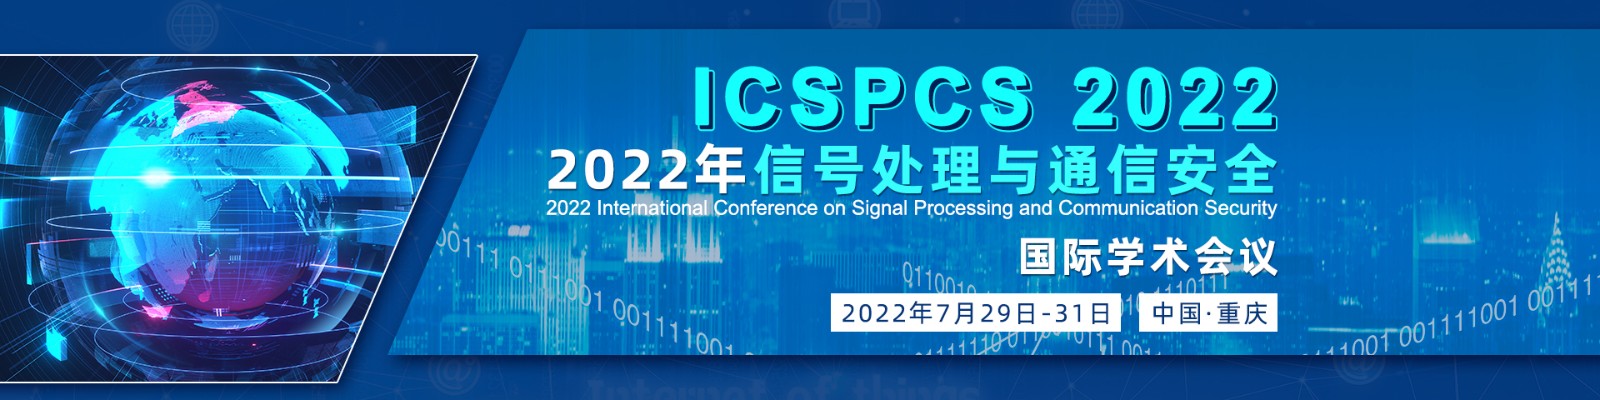 7月重庆-ICSPCS 2022-banner-陈军-20220316.jpg